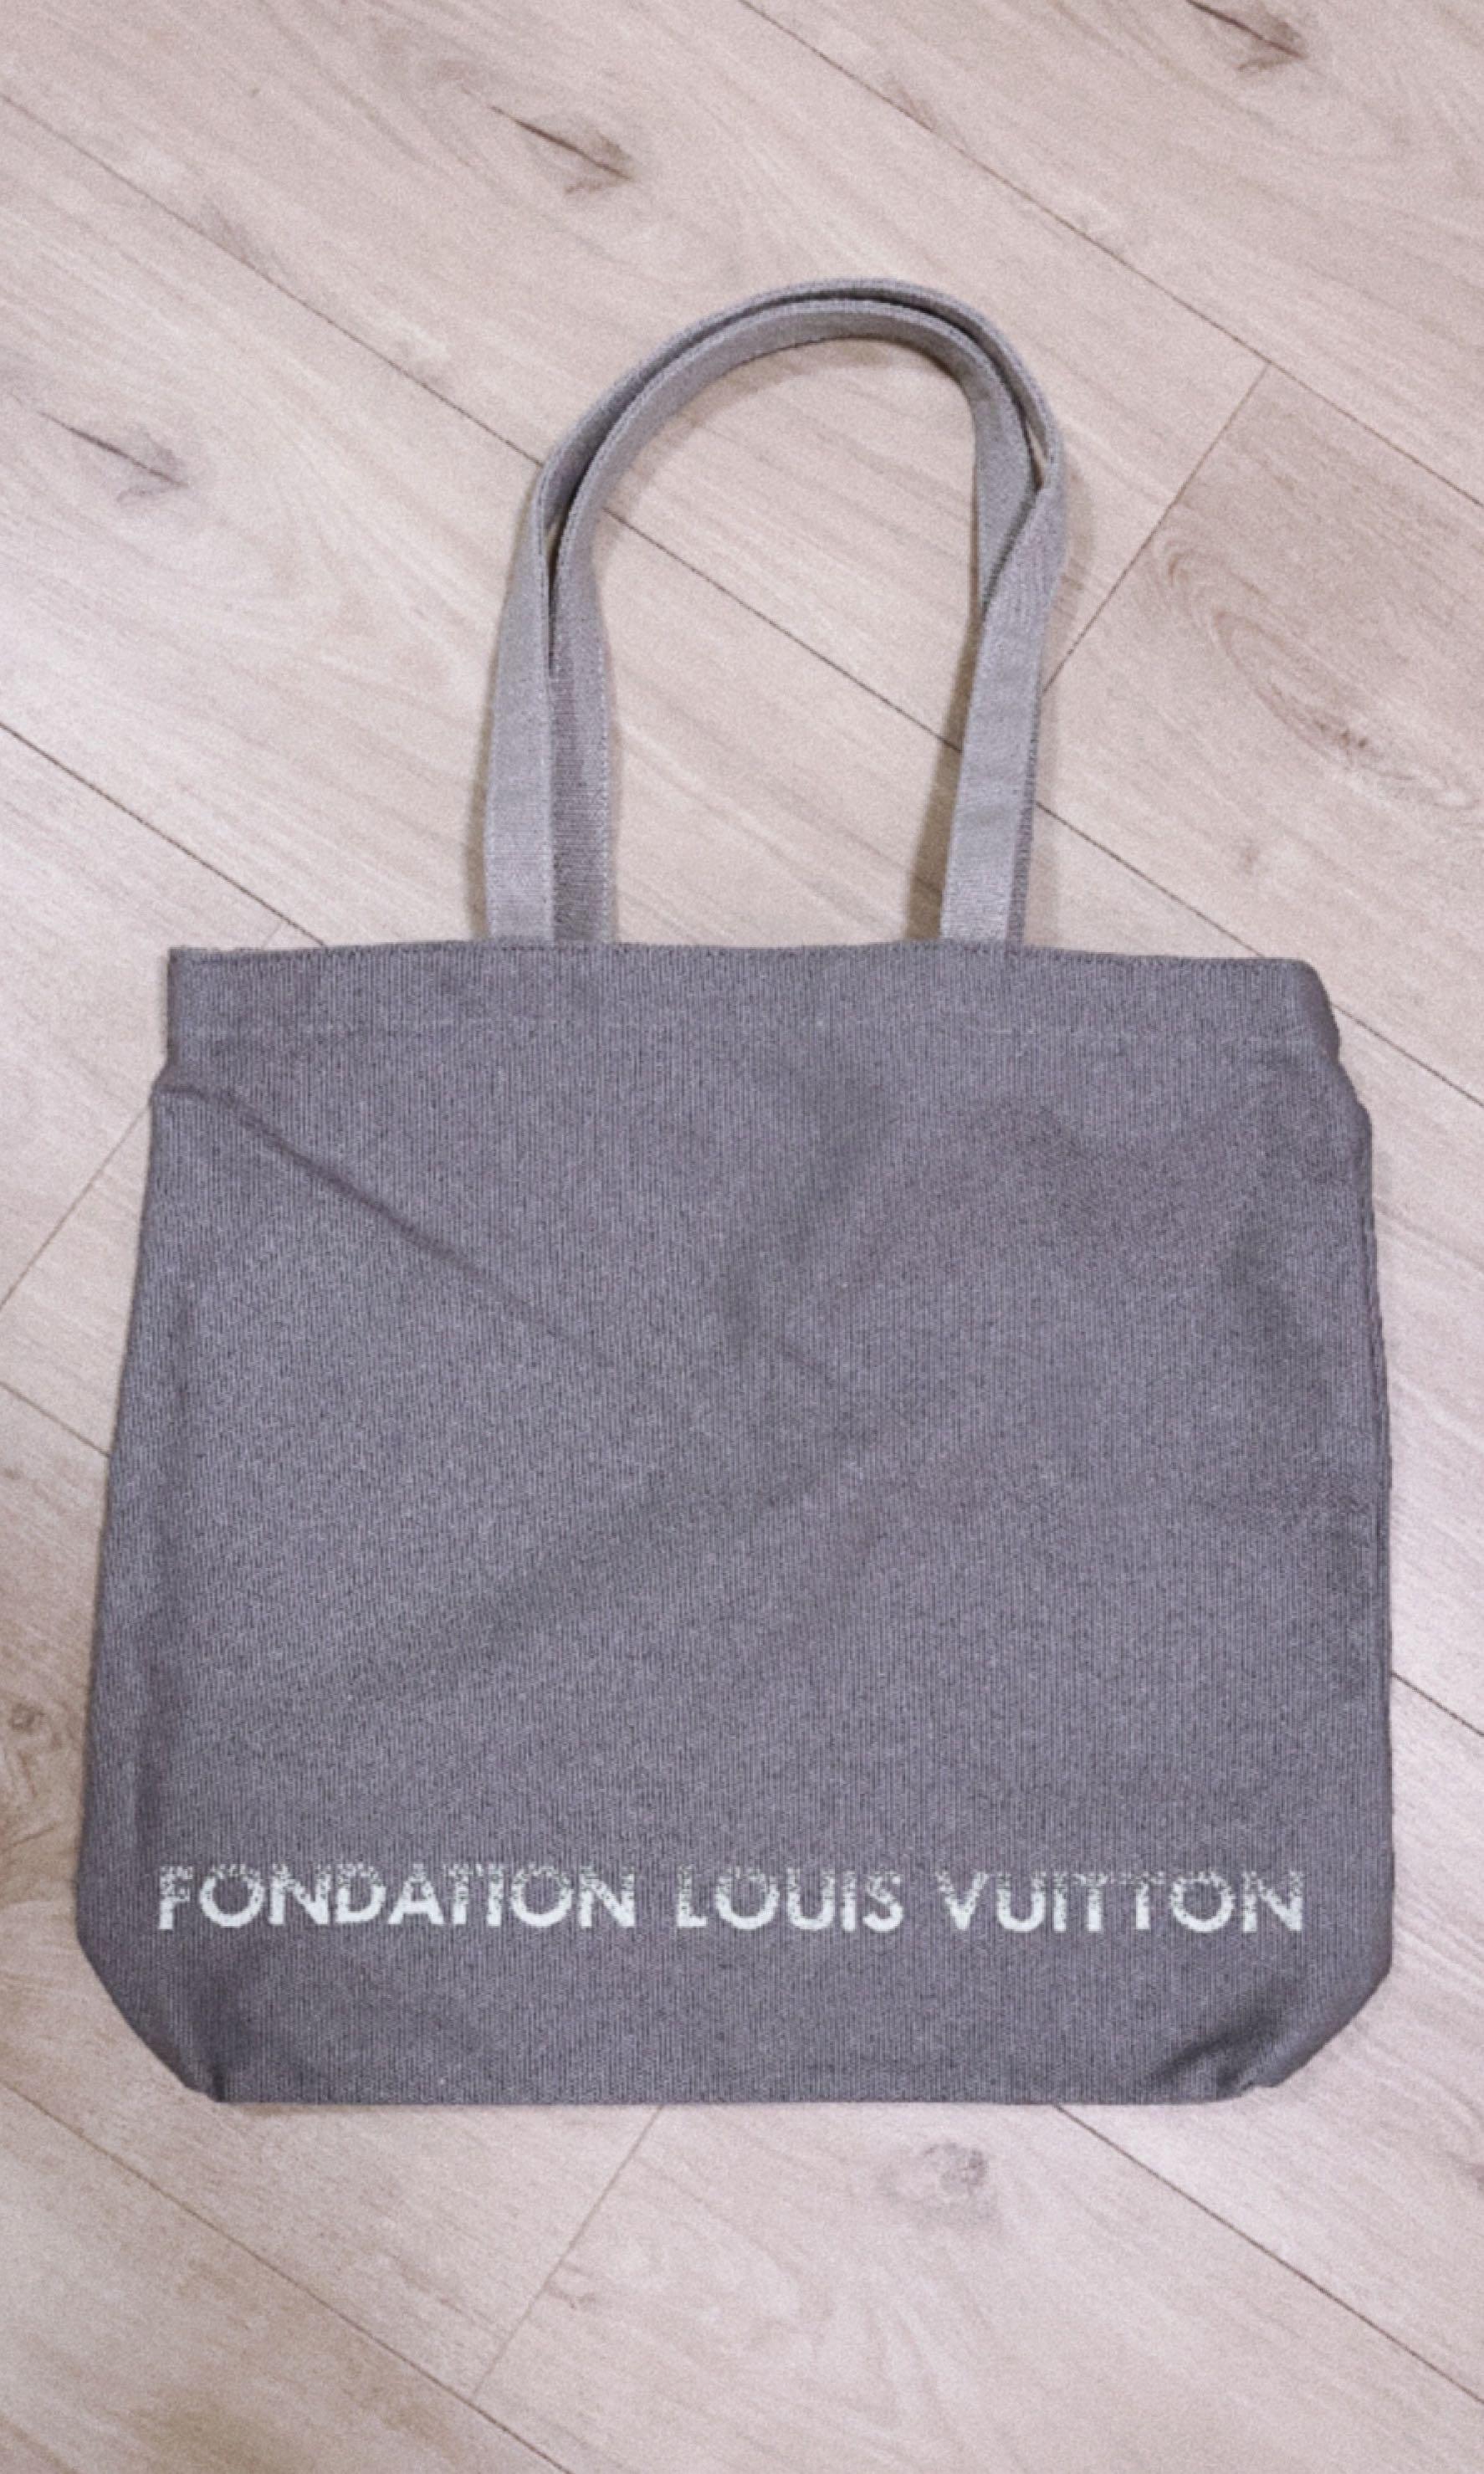 Louis Vuitton Museum Tote Bag FONDATION LOUIS VUITTON Canvas Gray